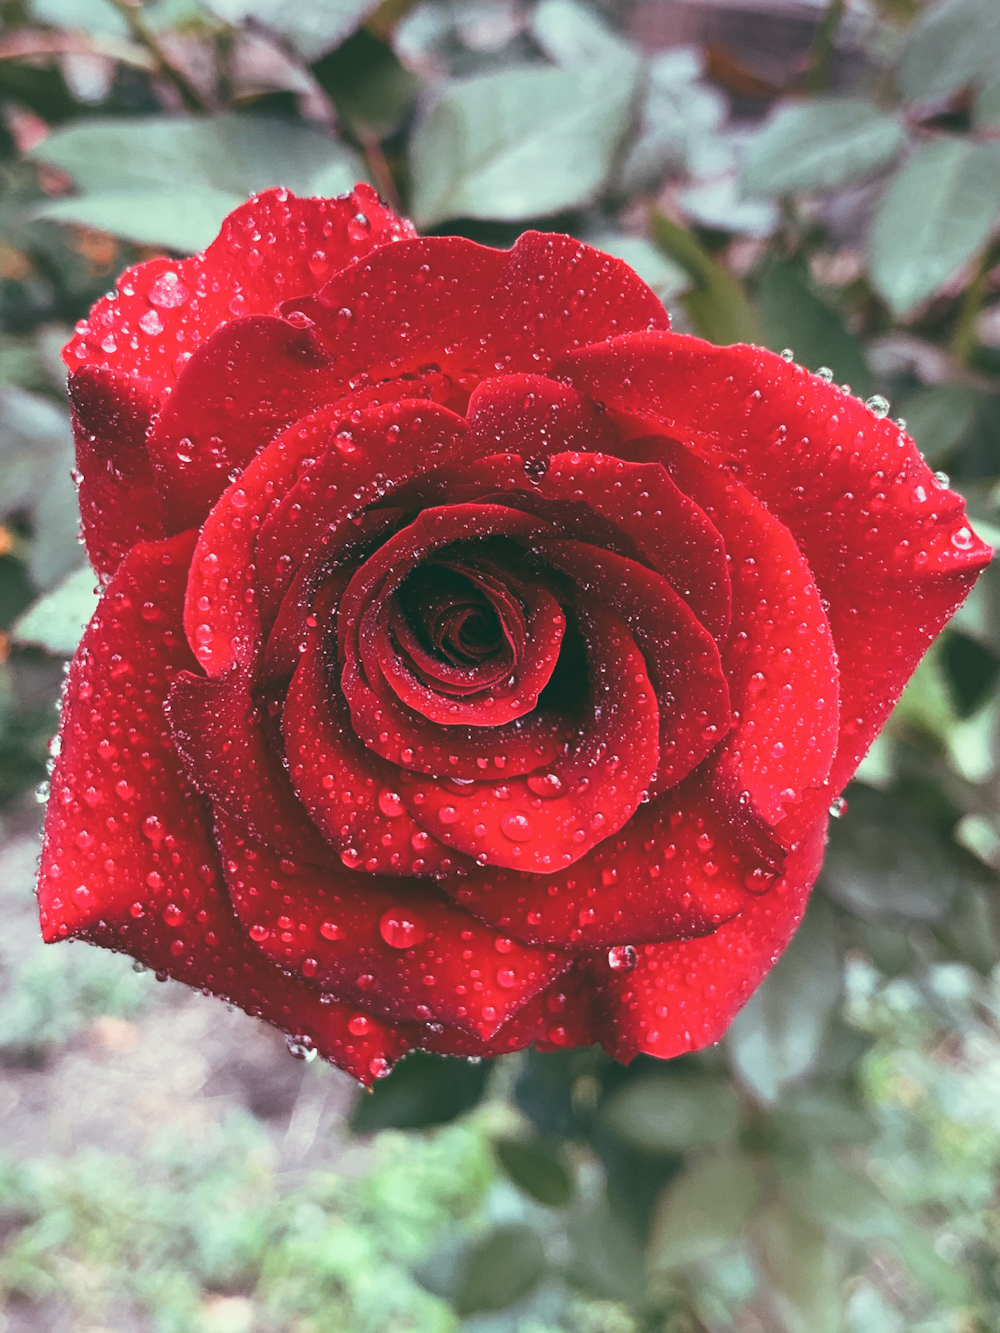 rosa vermelha em flor durante o dia